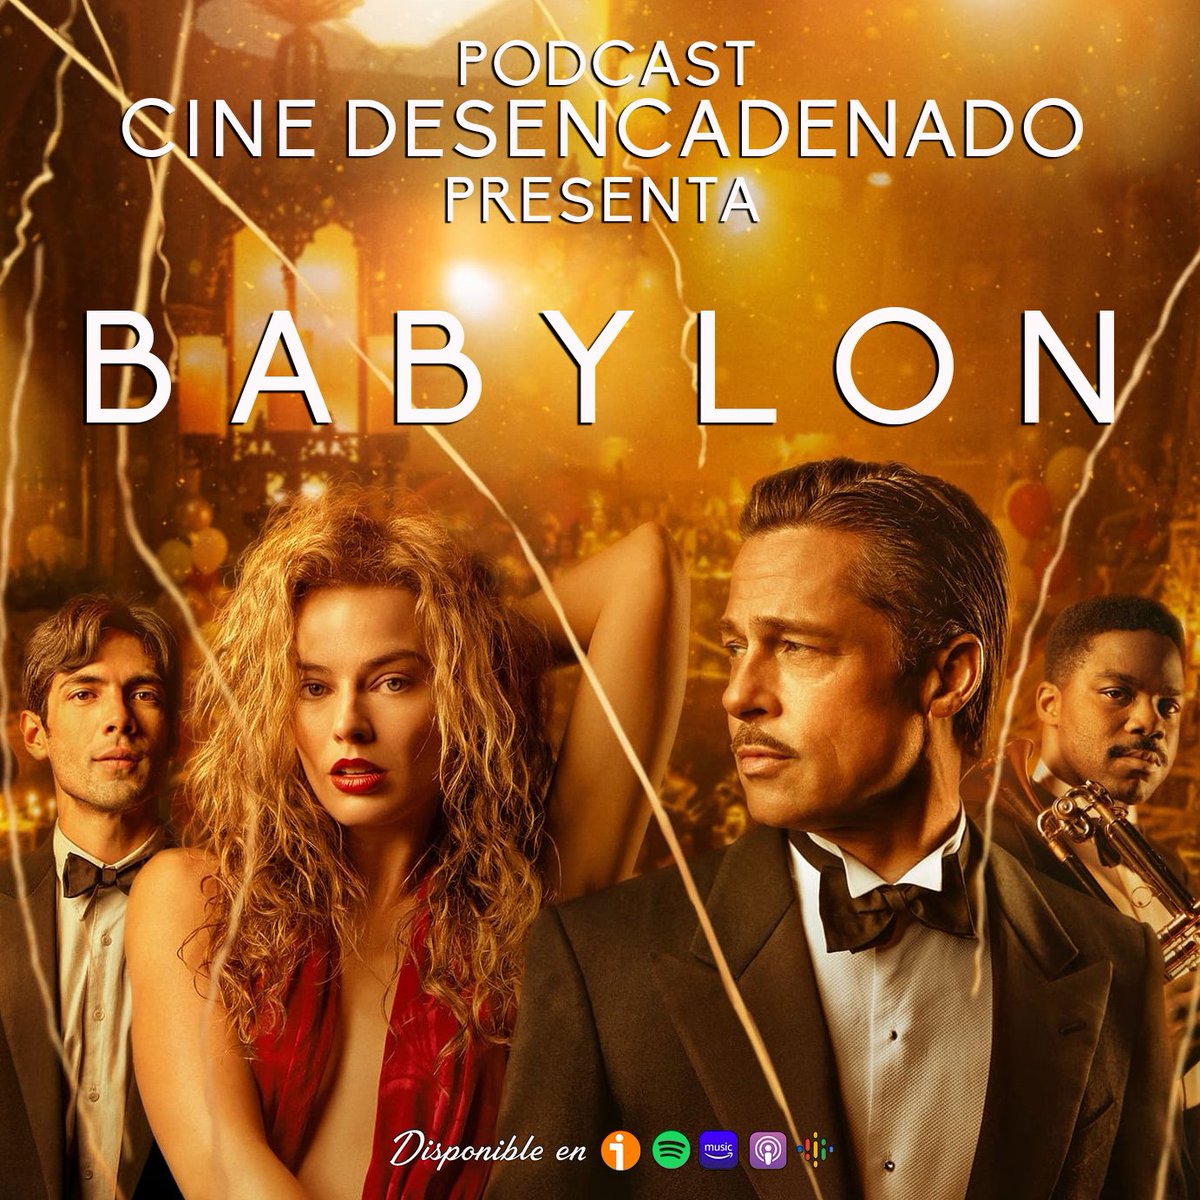 🎙️¡¡NUEVO PÓDCAST!!🎙️
Esta vez hablamos de una de las películas olvidadas injustamente en los Oscars de este año: #Babylon de #DamienChazelle 

Ivoox: go.ivoox.com/rf/107779603
Spotify: open.spotify.com/episode/3fG0i0…